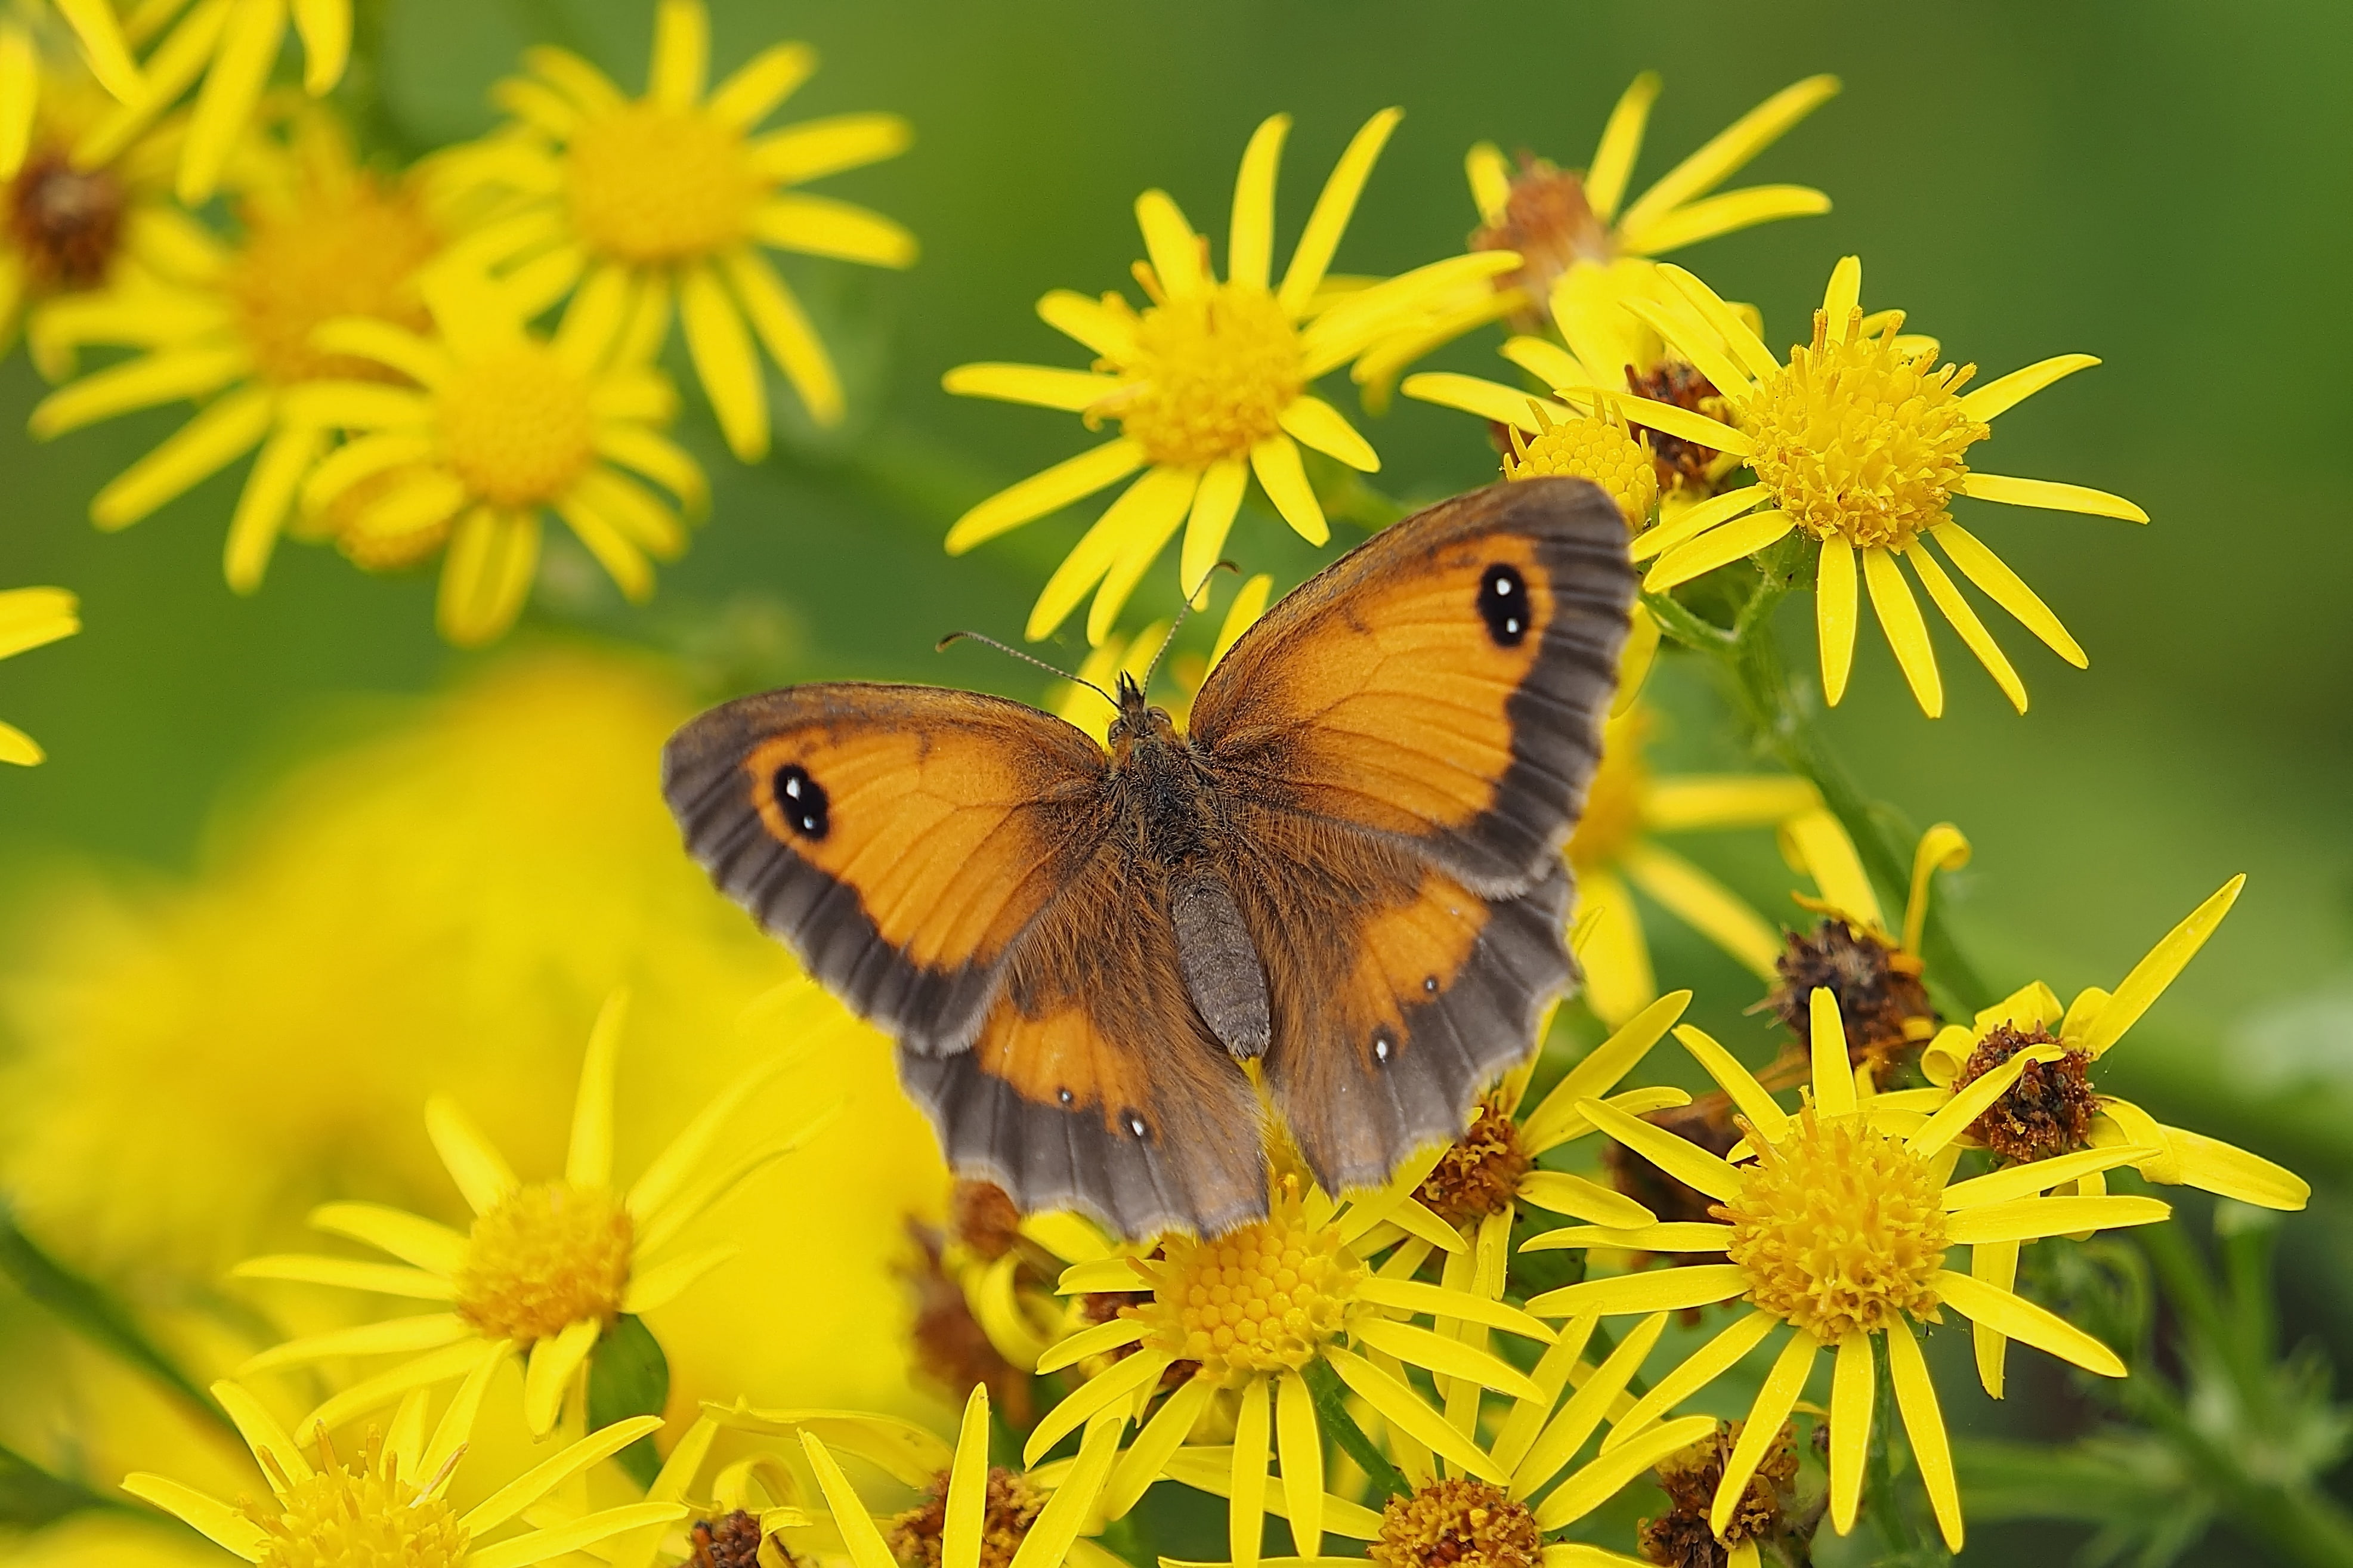 Butterfly, Yellow flowers, 4K